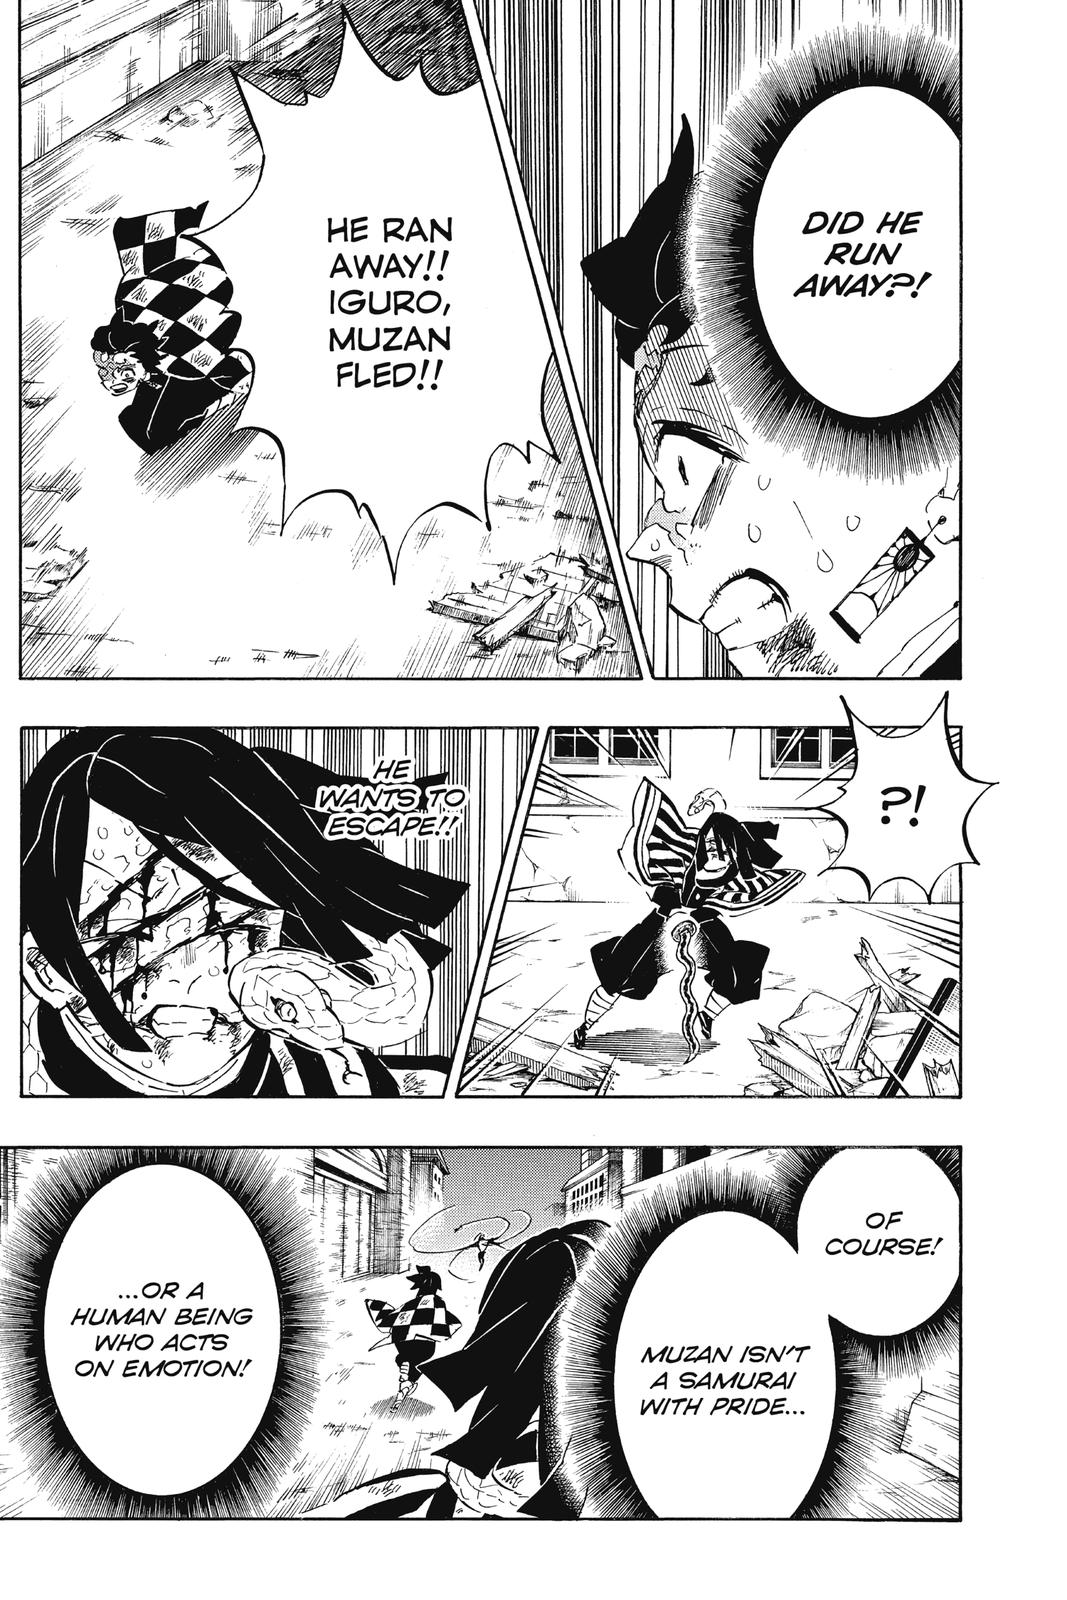 Demon Slayer Manga Manga Chapter - 195 - image 4